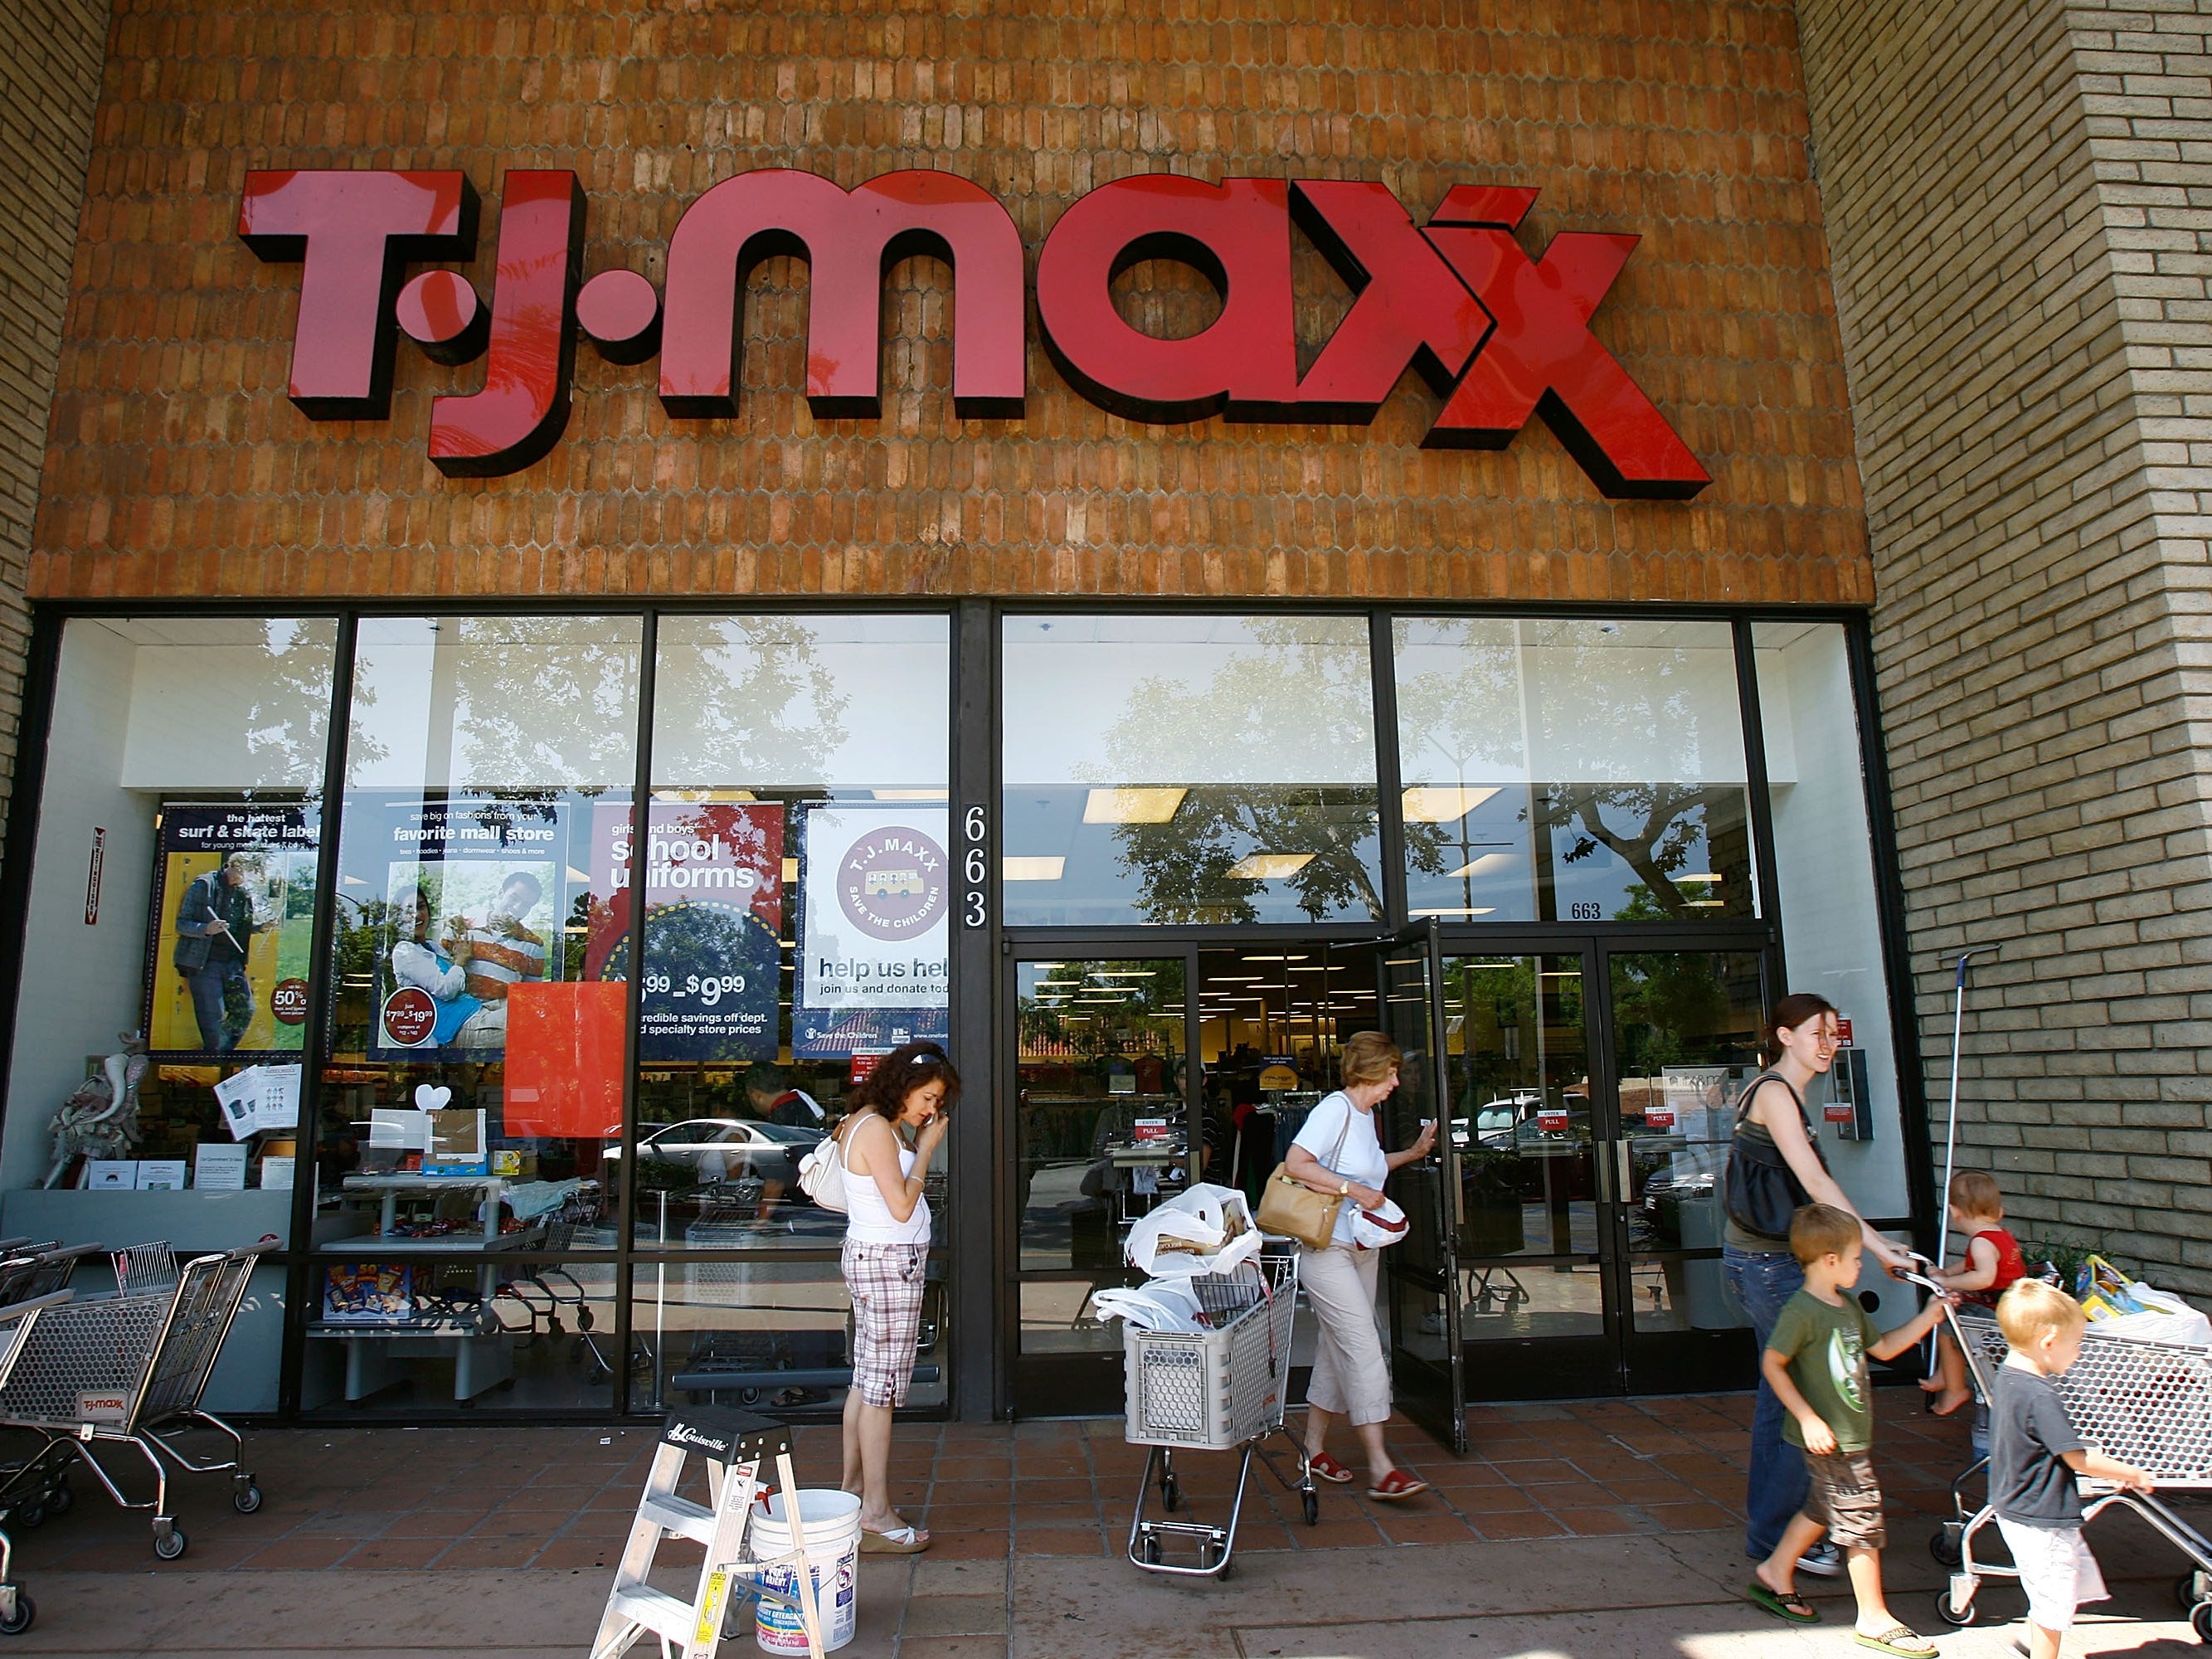 T.J. Maxx parent misses estimates as lockdowns cut sales by $1 bln